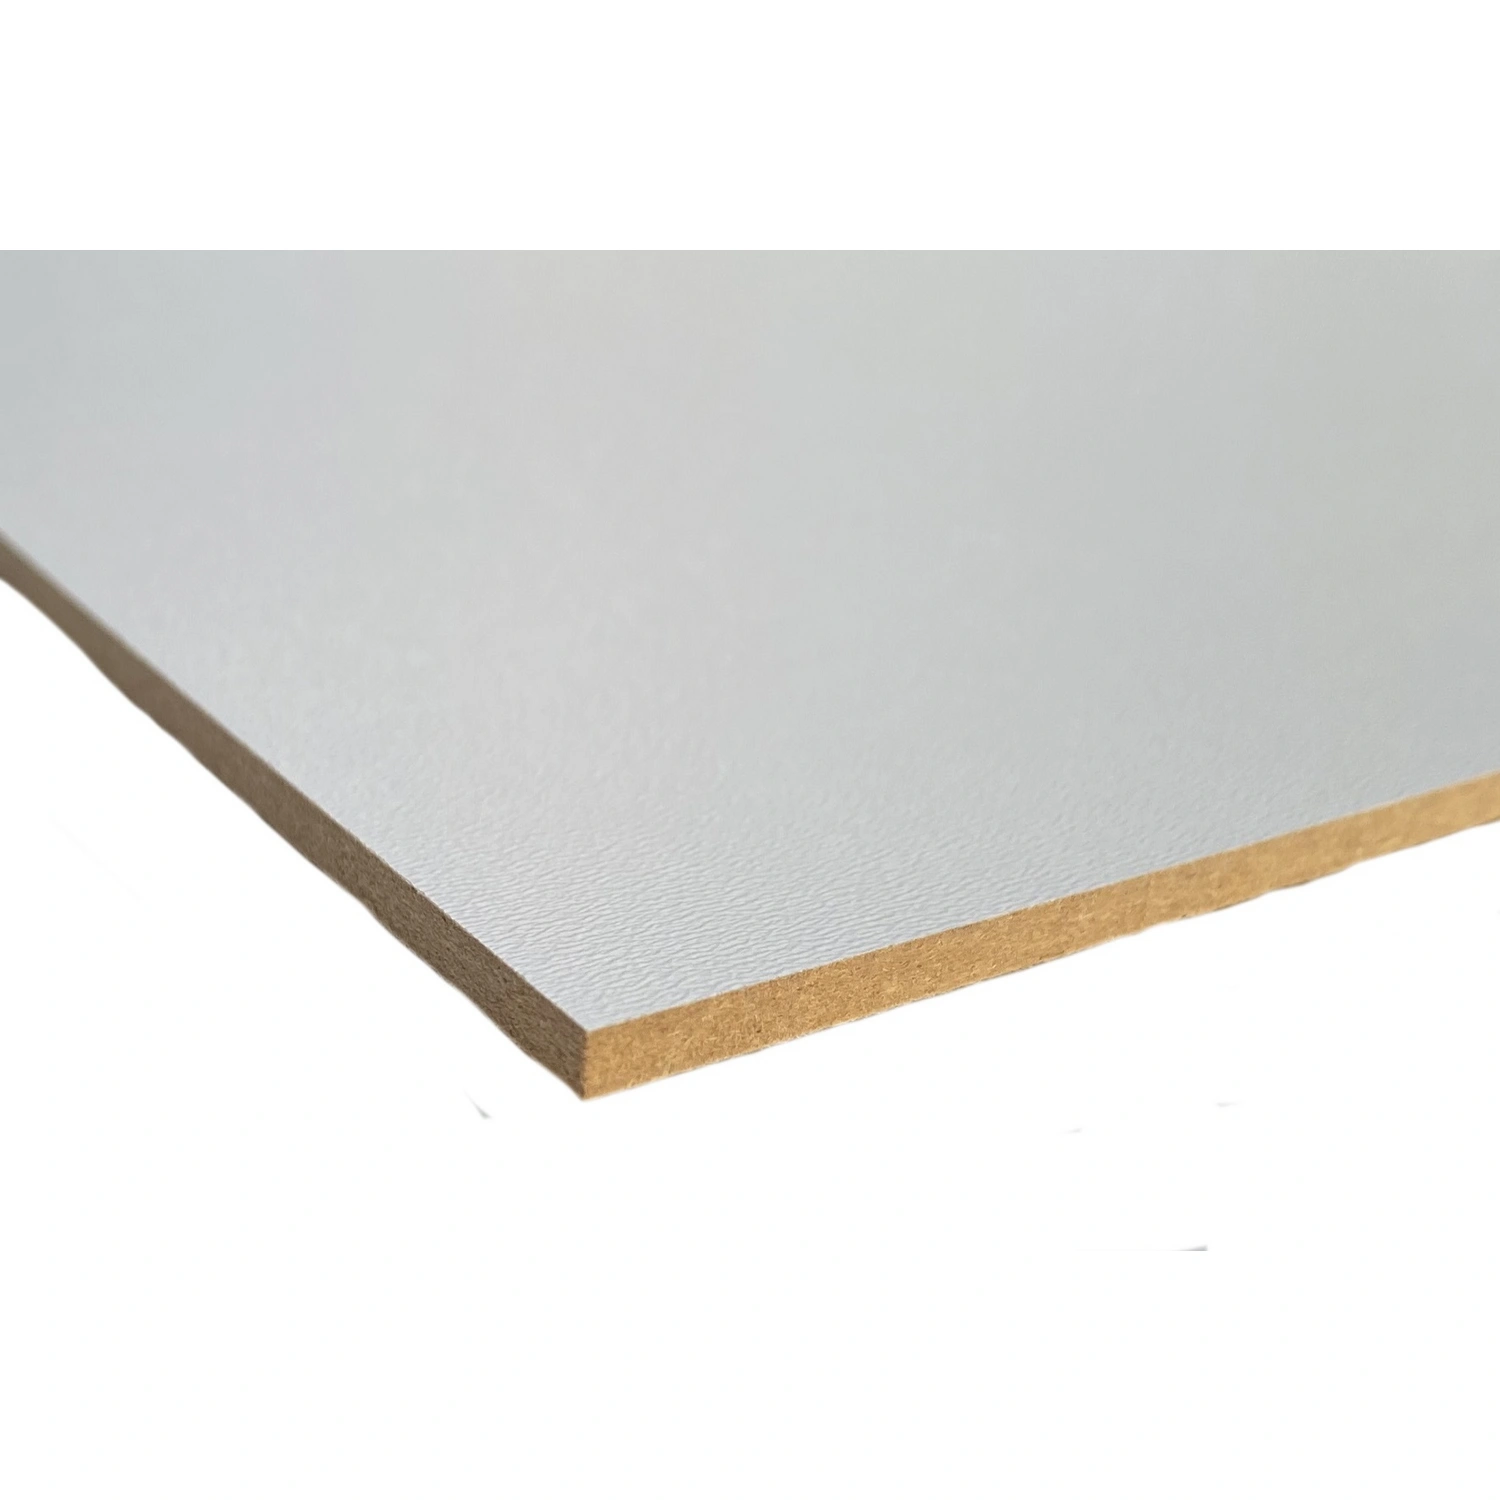 HDF-Platte, BxL: 600 x 1200 mm, Hochdichte Faserplatte (HDF), weiß 